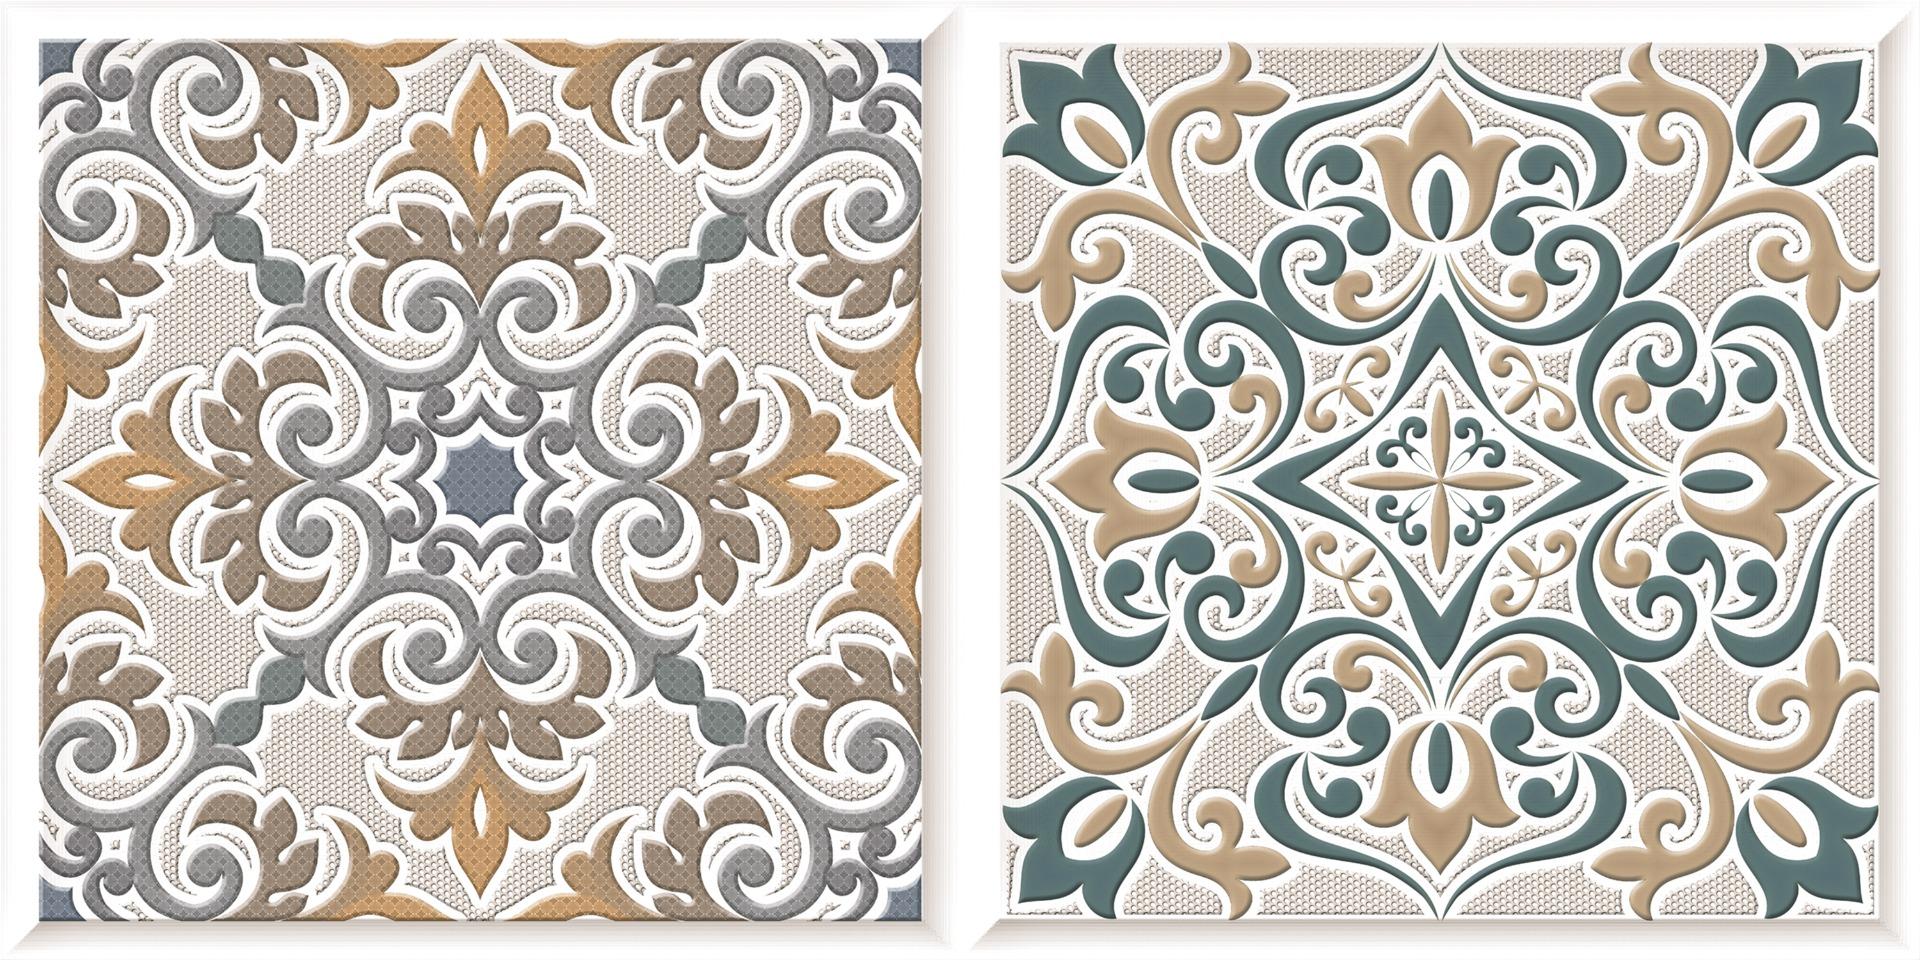 Pattern Tiles for Bathroom Tiles, Living Room Tiles, Kitchen Tiles, Bedroom Tiles, Balcony Tiles